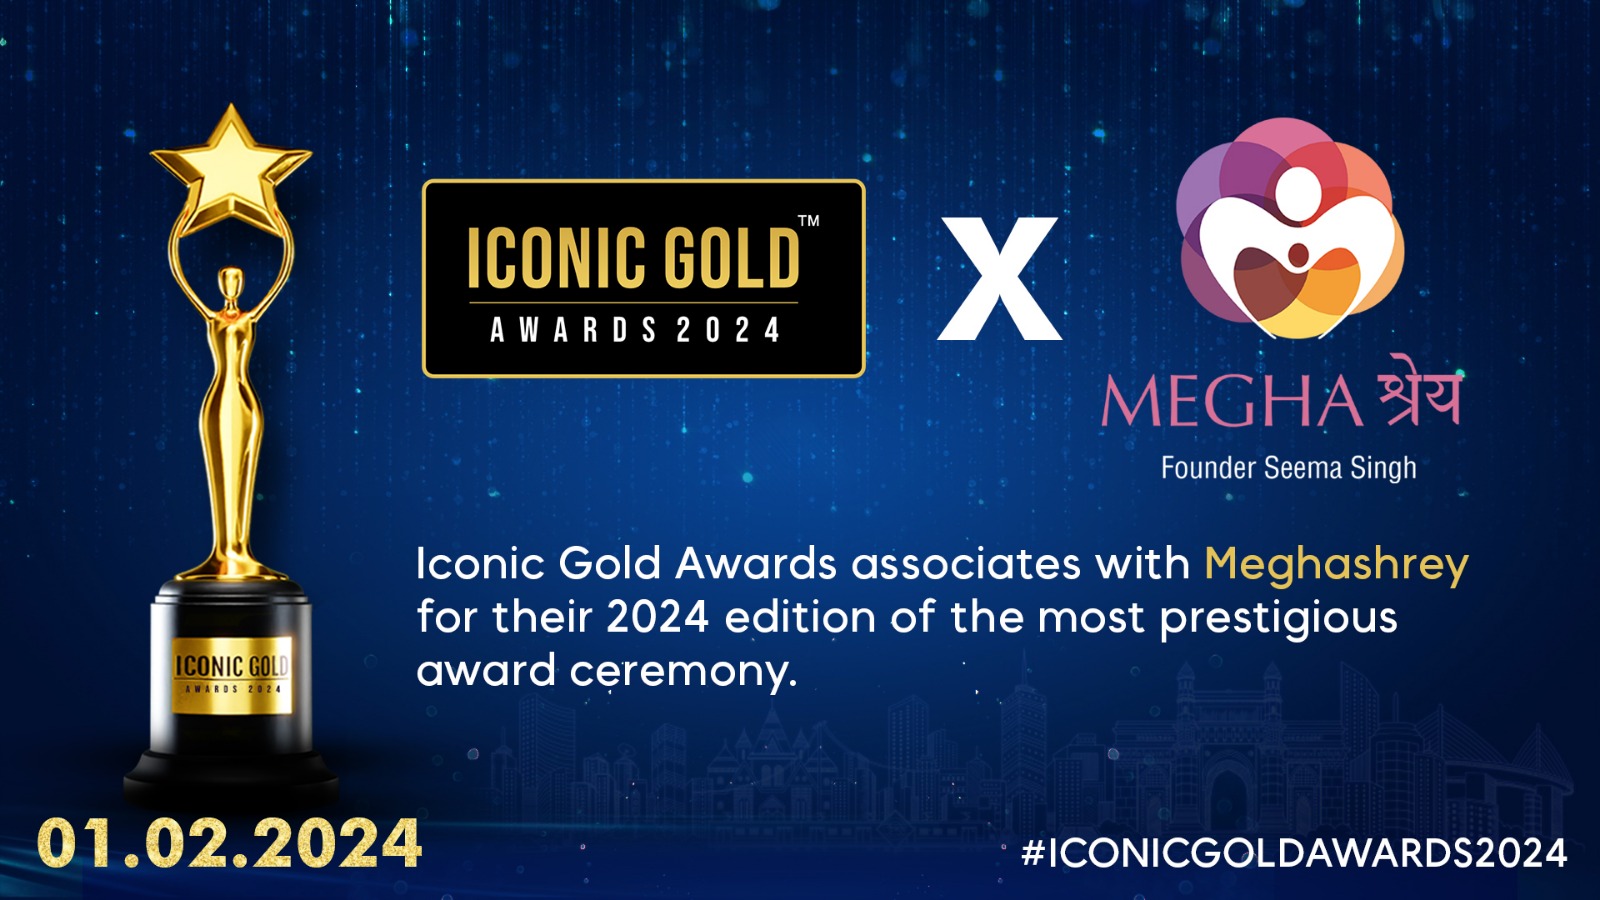 Iconic Gold Awards 2024 Associates Meghashrey NGO - The Blunt Times